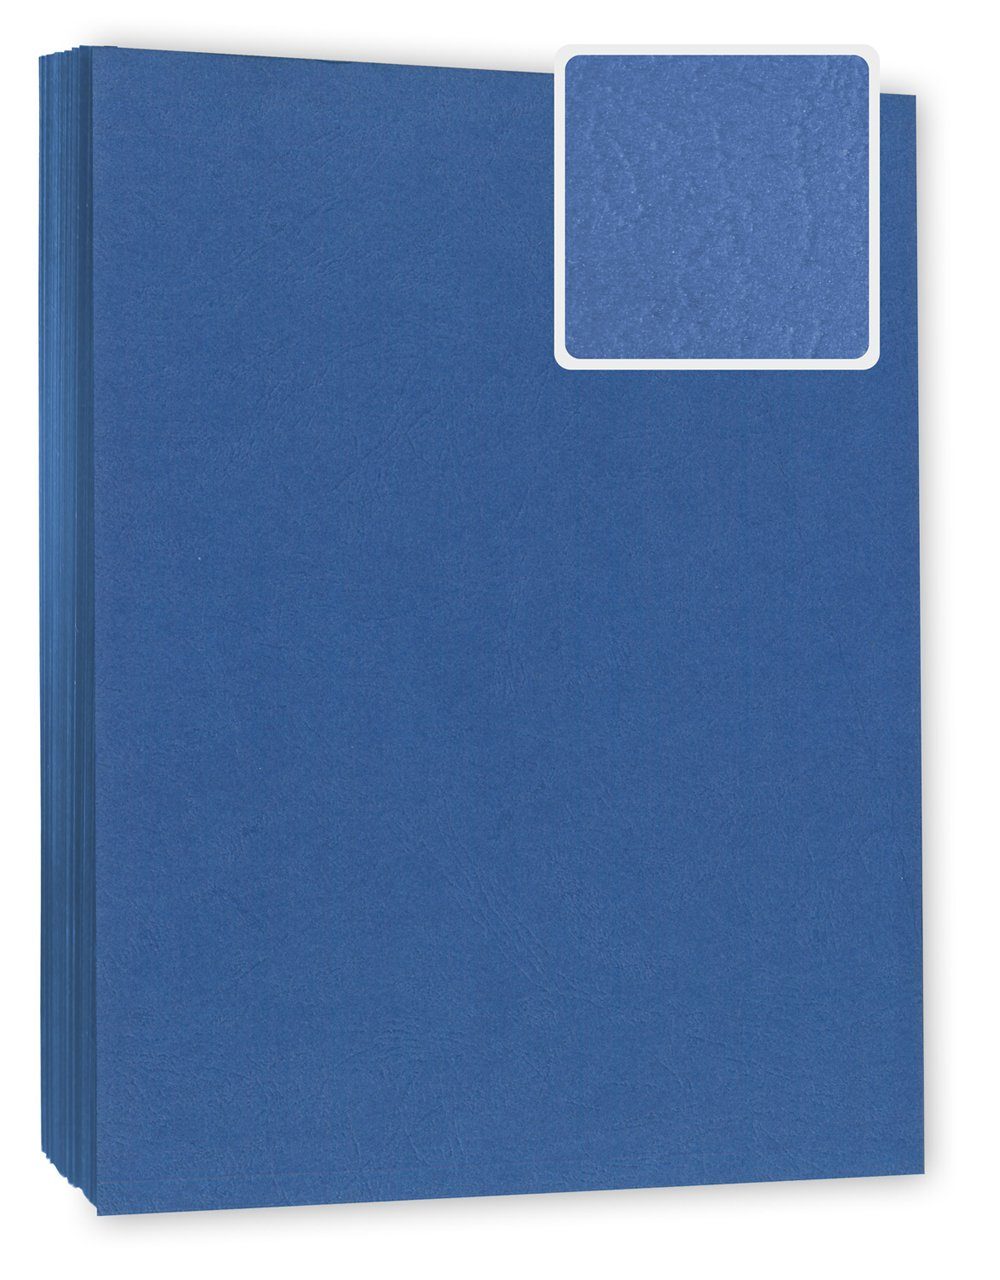 Kopierladen Berlin Papierkarton Bindekarton / Deckblatt, DIN A4 240 g/m², 100 Stück in Lederoptik blau